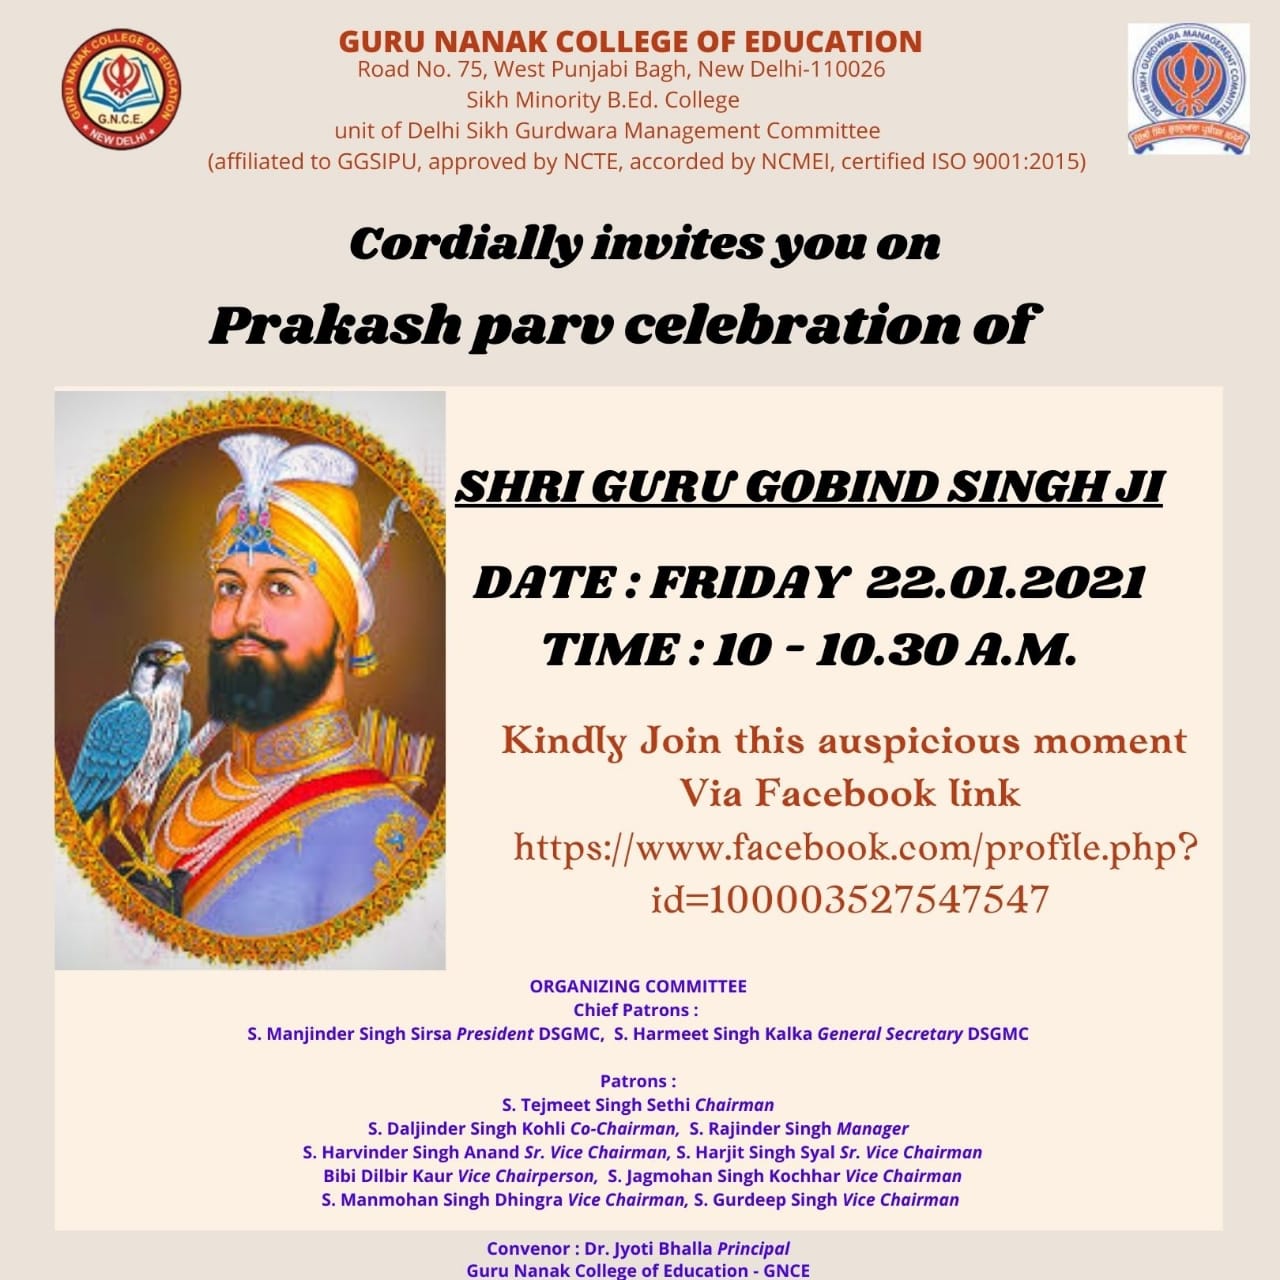 Shri Guru Gobind Singh ji